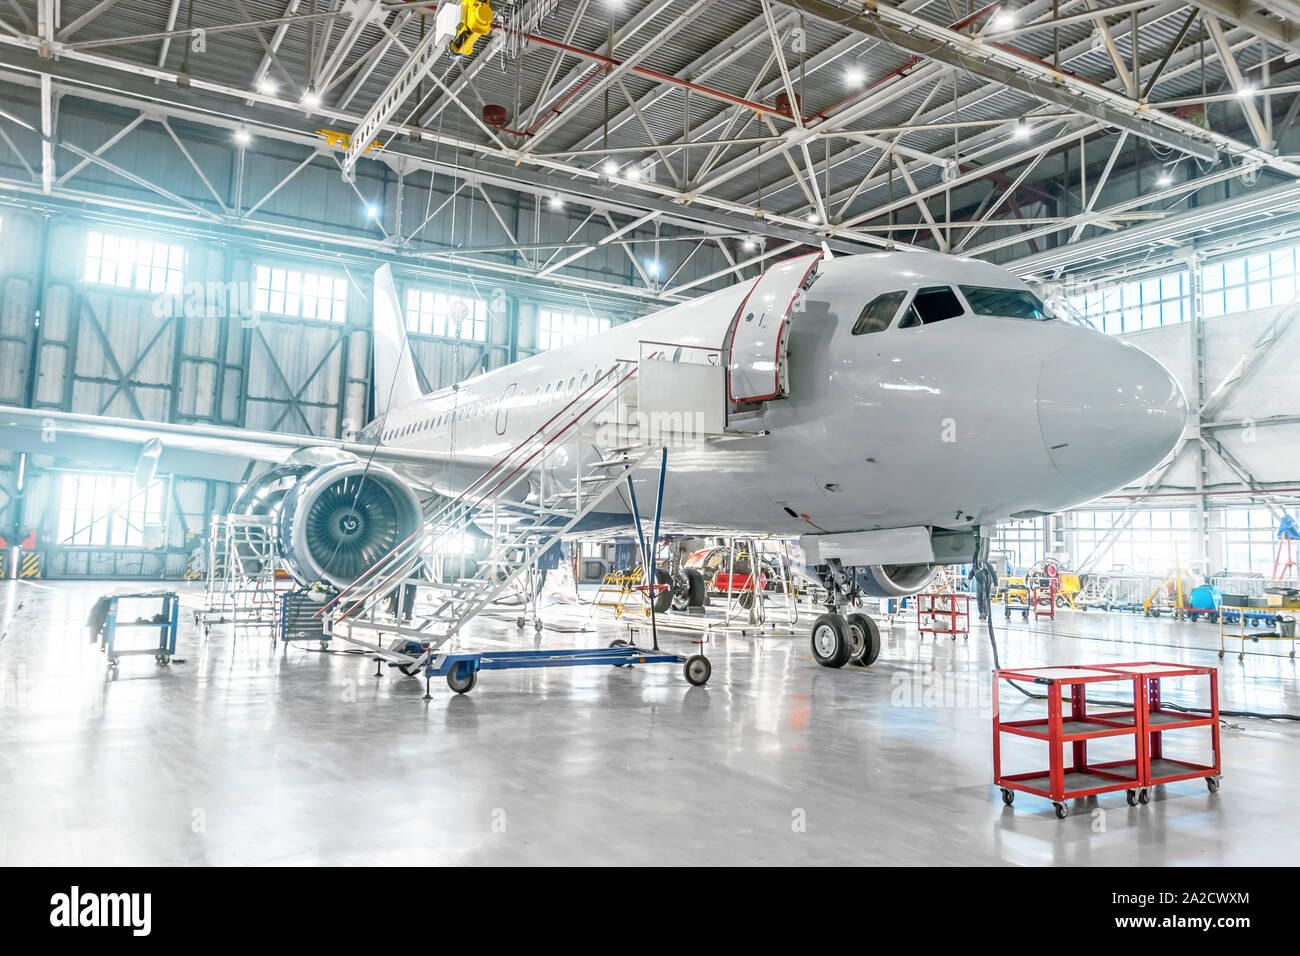 Aeromobili sotto manutenzione, controllare i sistemi meccanici per operazioni di volo. Piano nell'hangar. Foto Stock